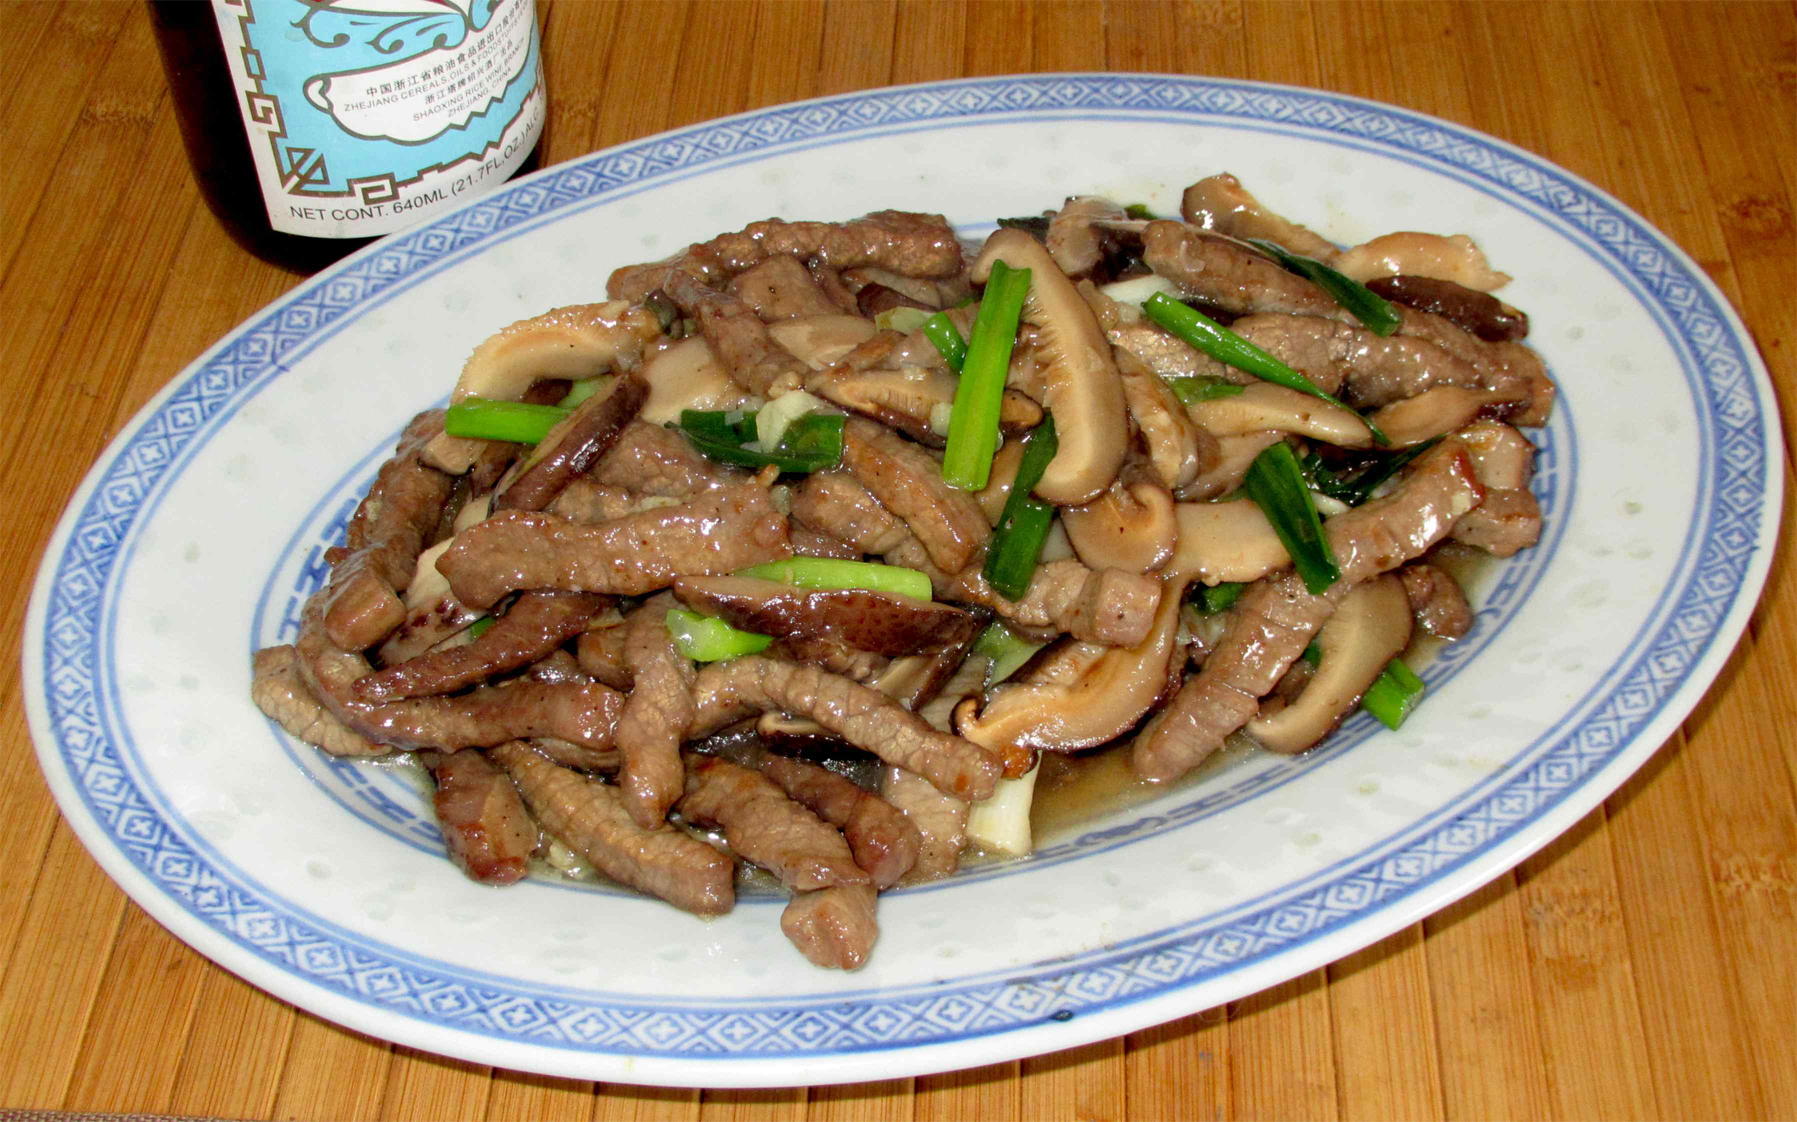 Mushroom-scallion-beef